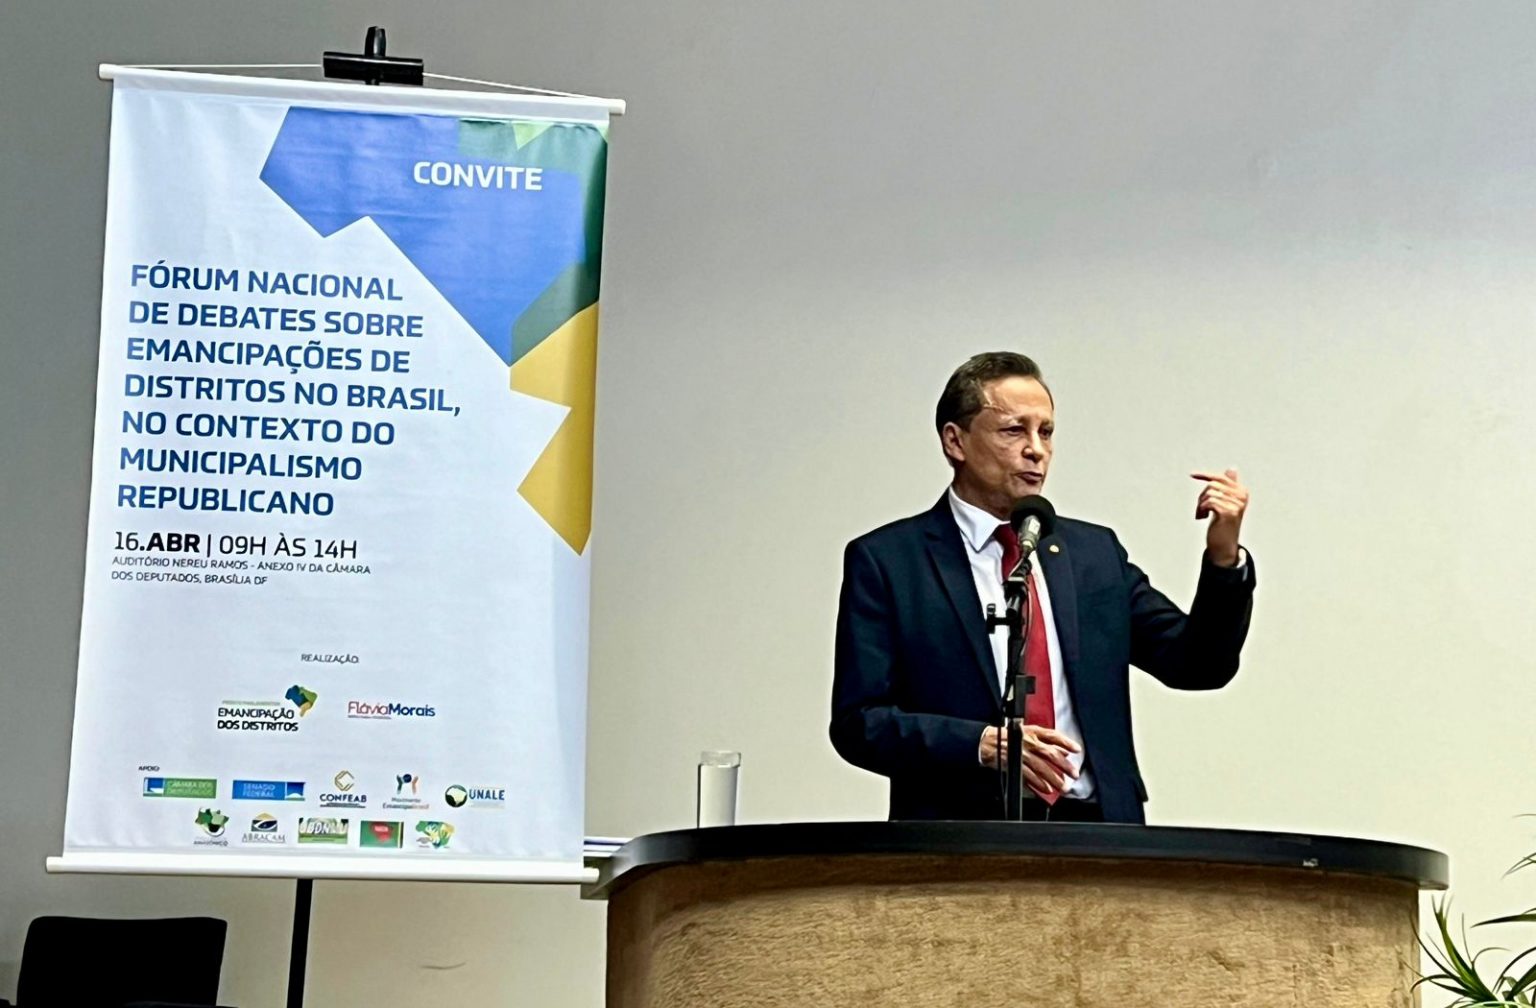 Adjuto Afonso participa de Forum sobre emancipacao de municipios na Camara Federal em Brasilia erFDoG